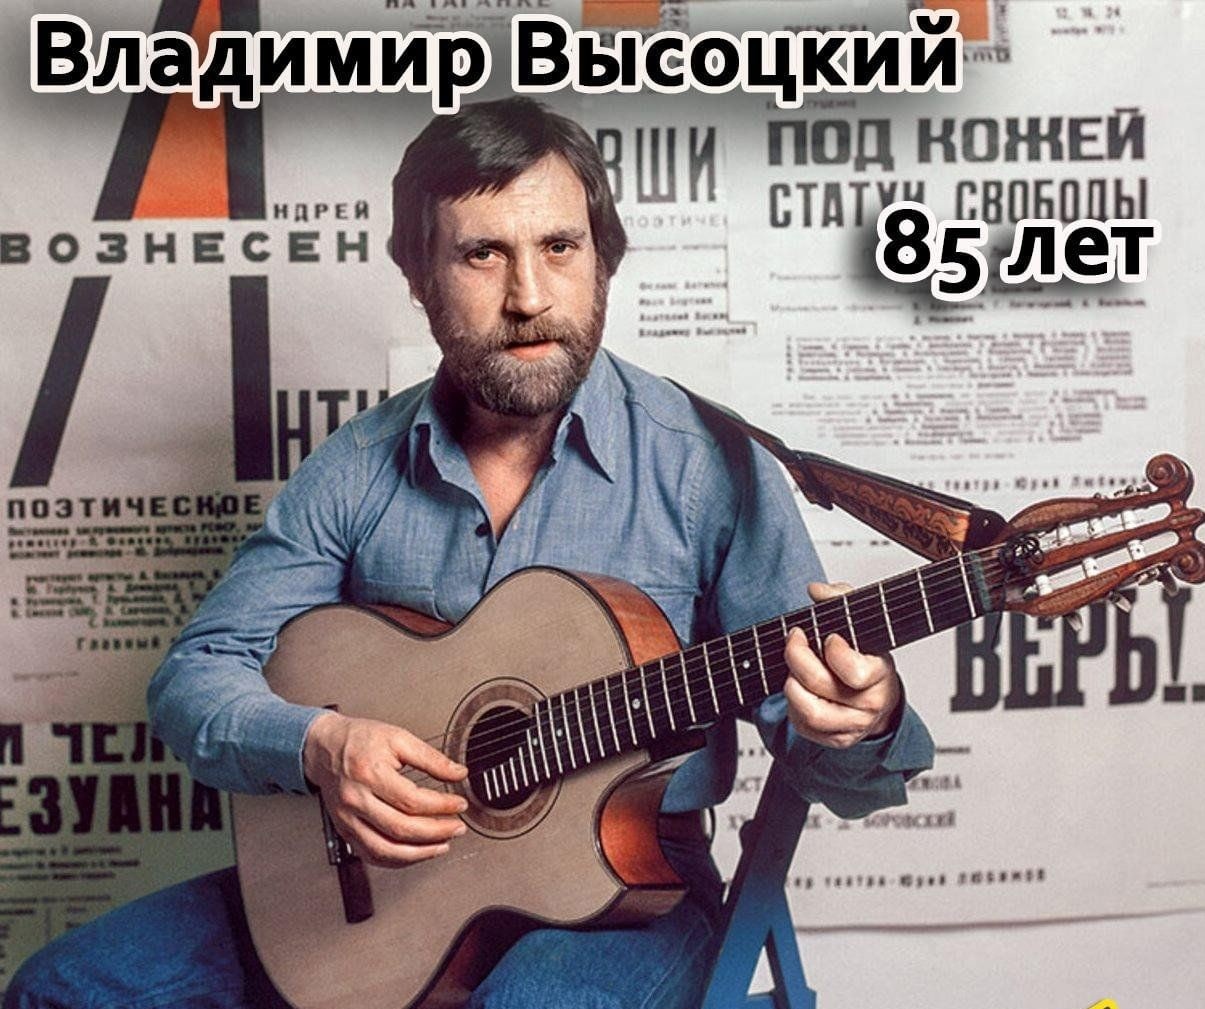 Владимир Высоцкий с бородой и гитарой